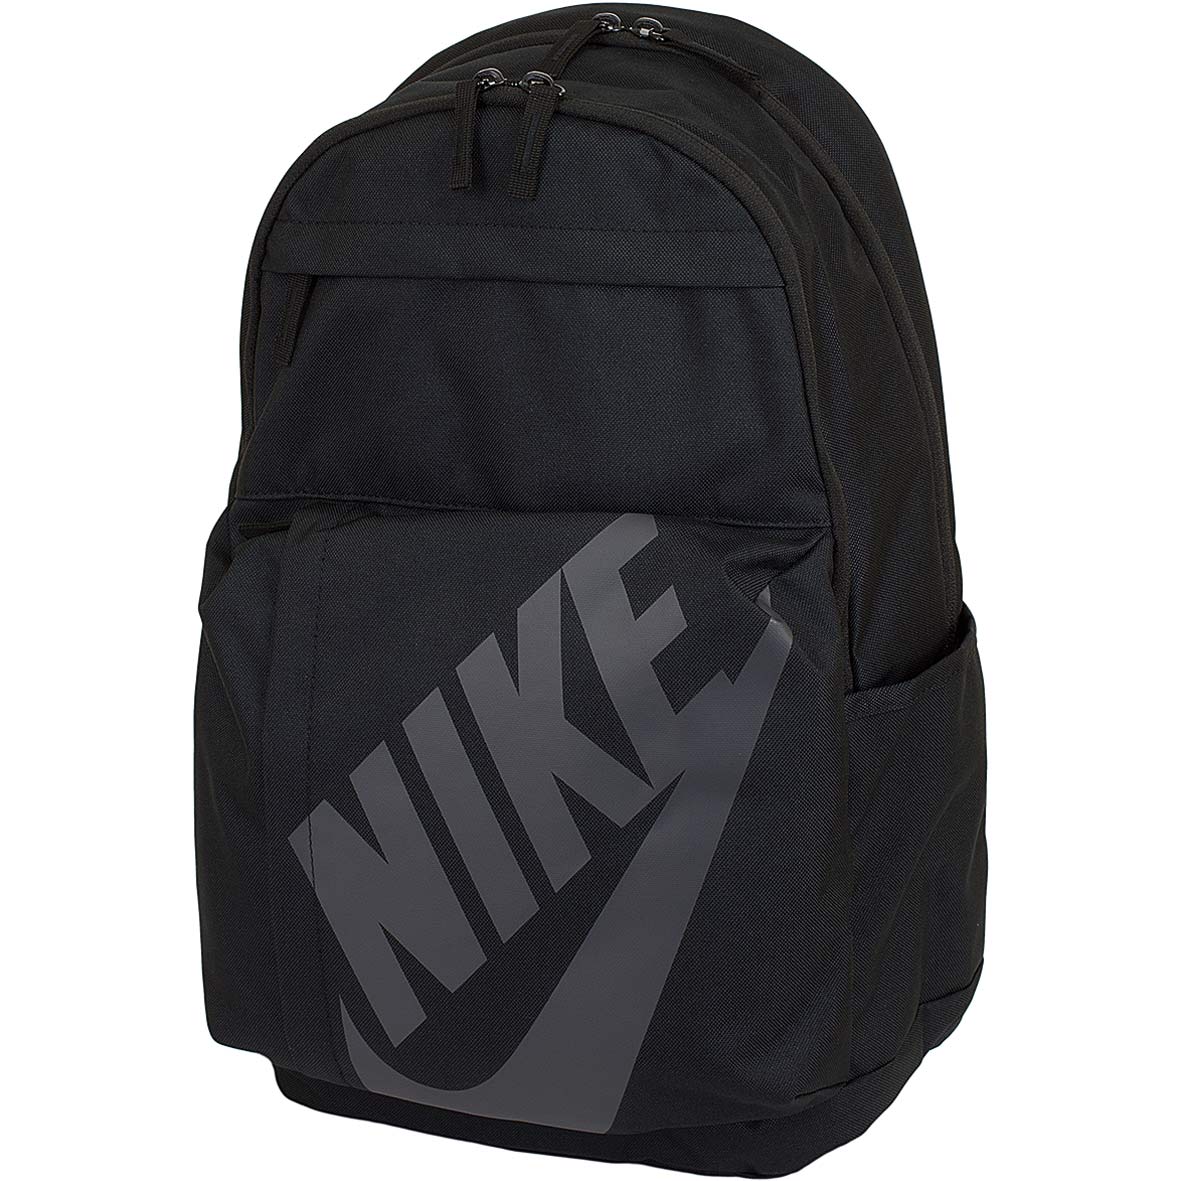 ☆ Nike Rucksack Elemental schwarz/anthrazit - hier bestellen!